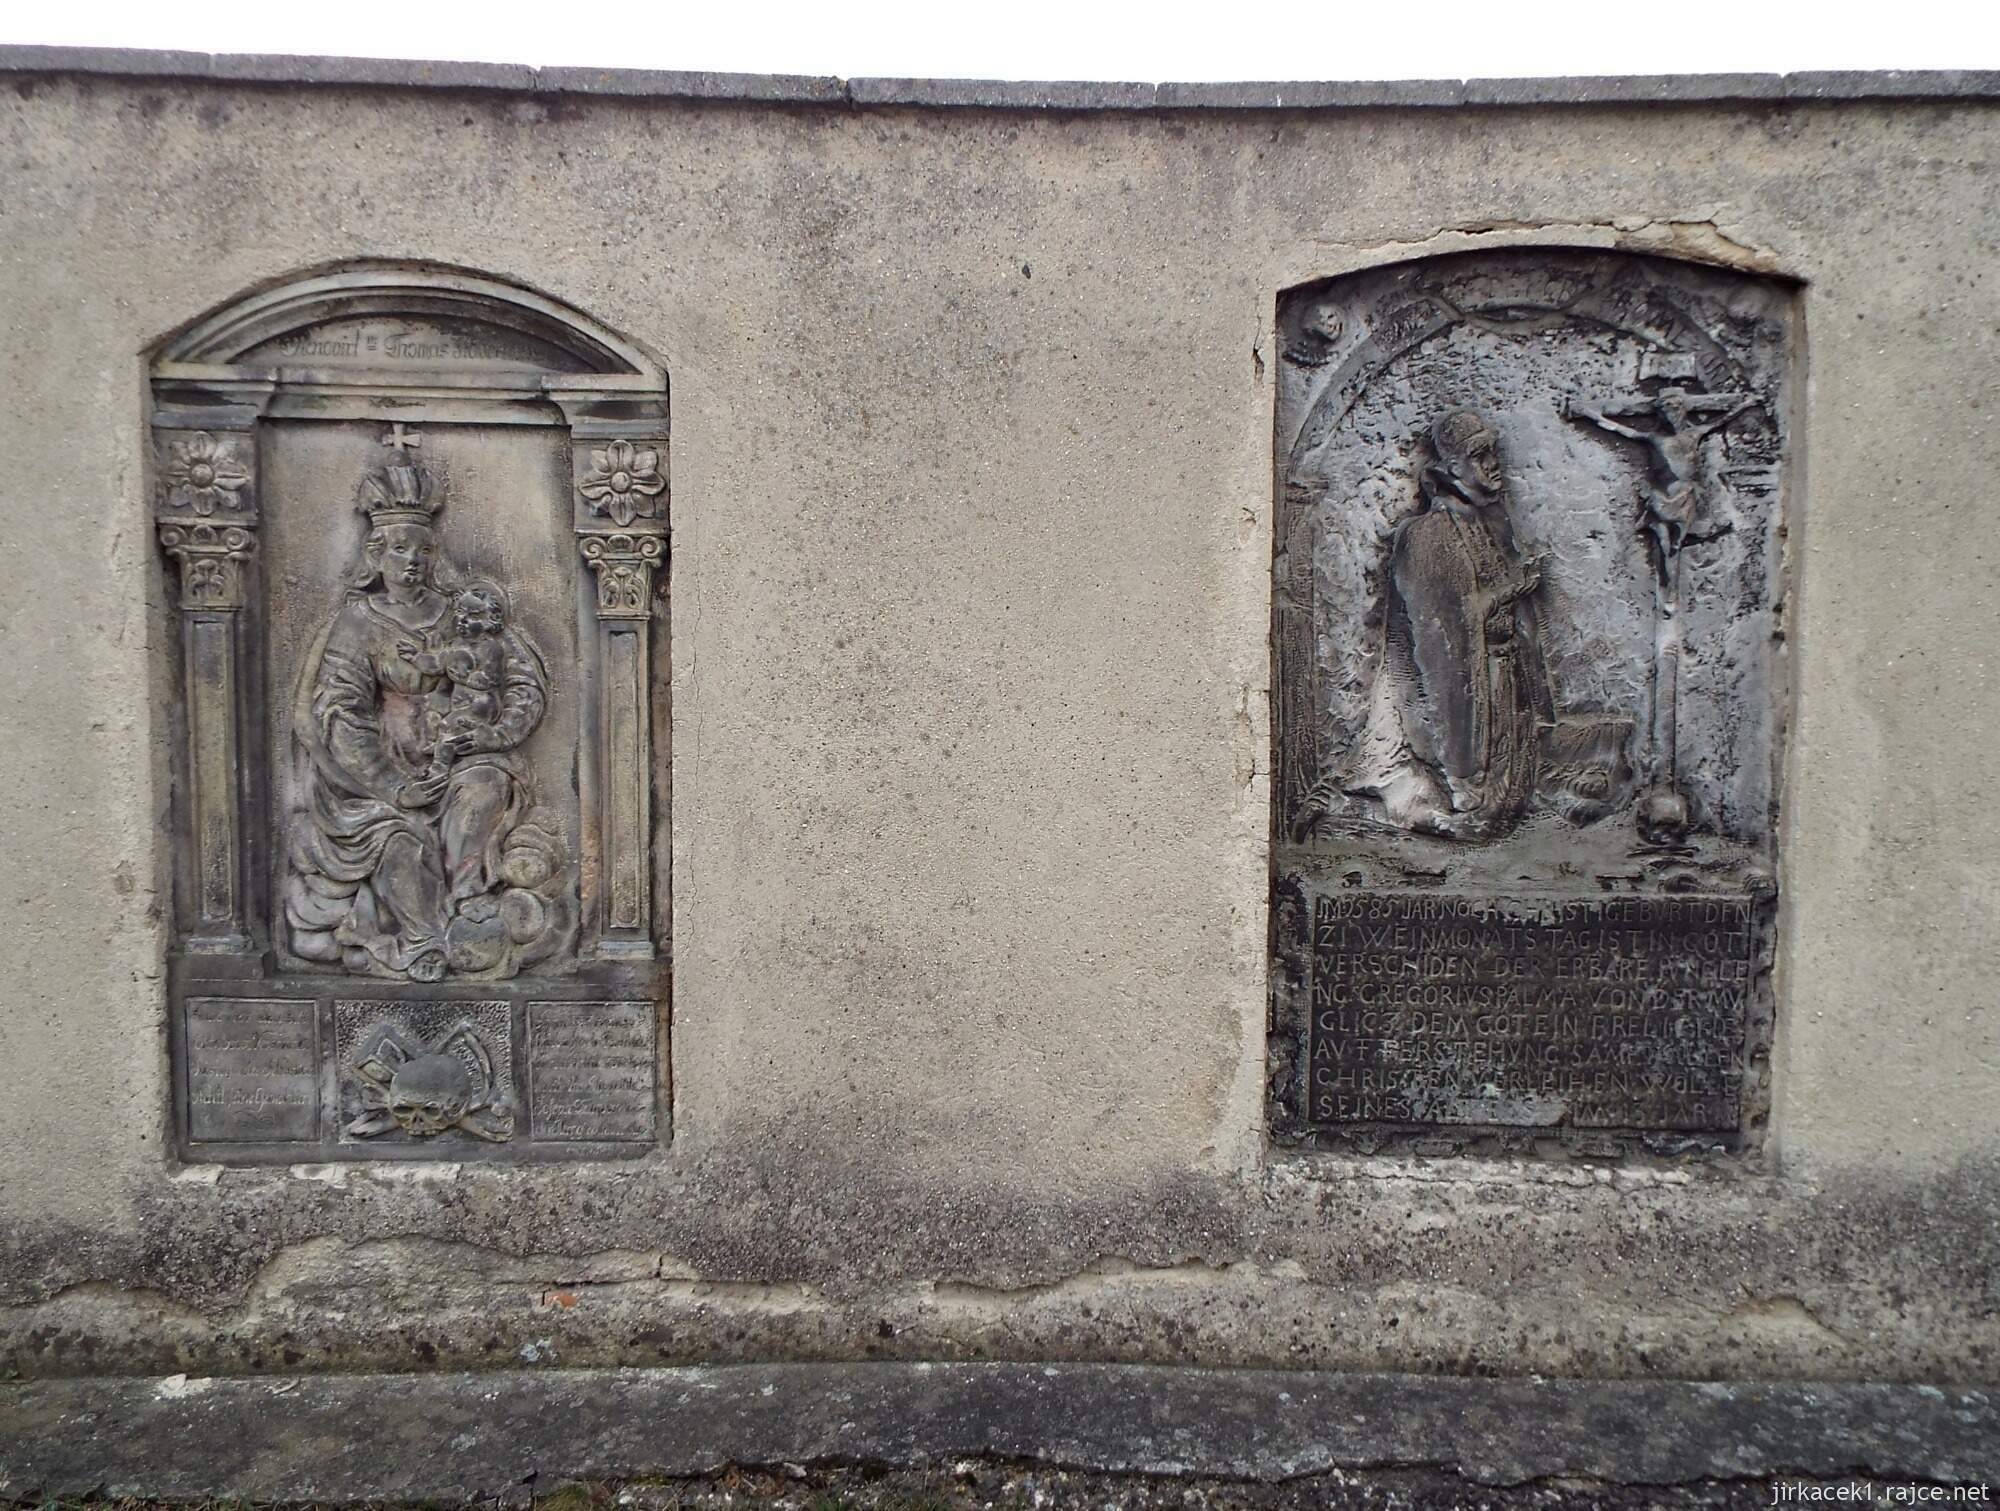 45 - Svitavy - Kostel sv. Jiljí 17 - náhrobky na zdi naproti vchodu do kostela